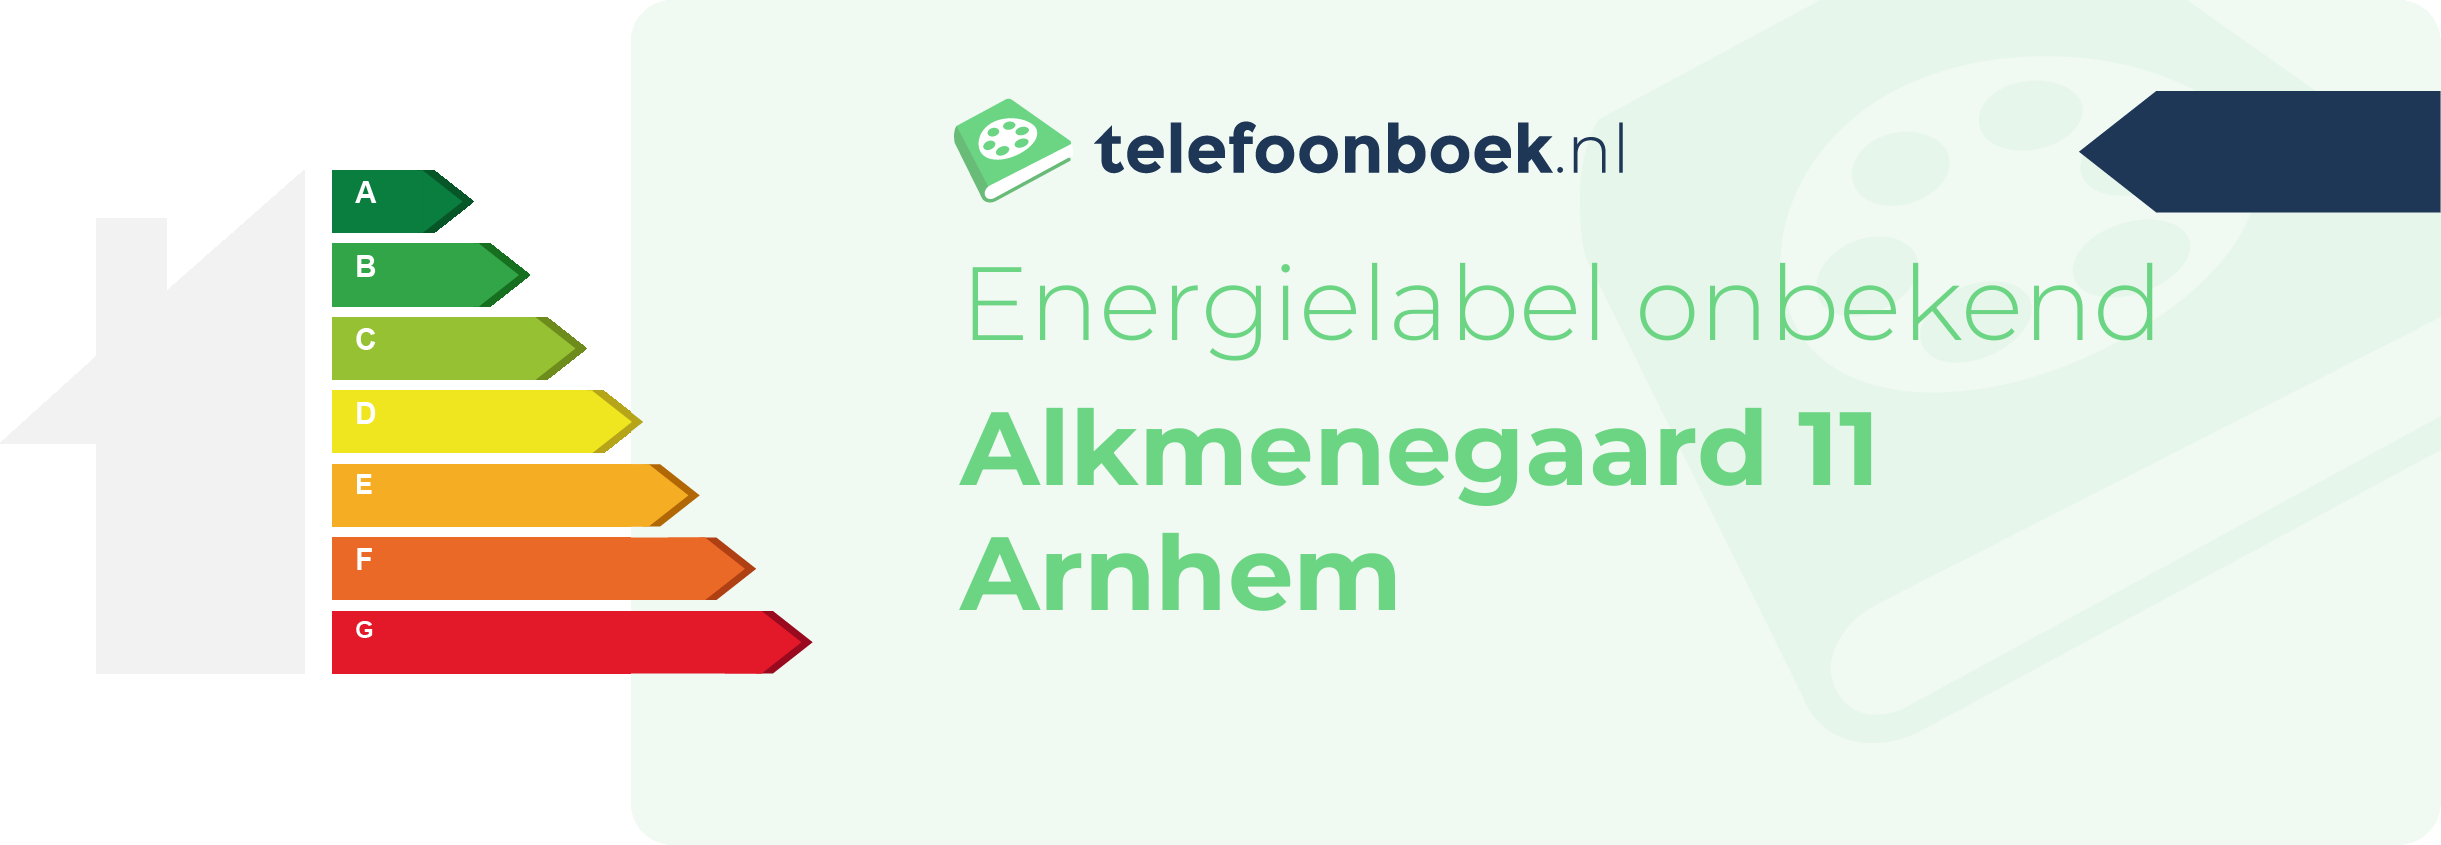 Energielabel Alkmenegaard 11 Arnhem